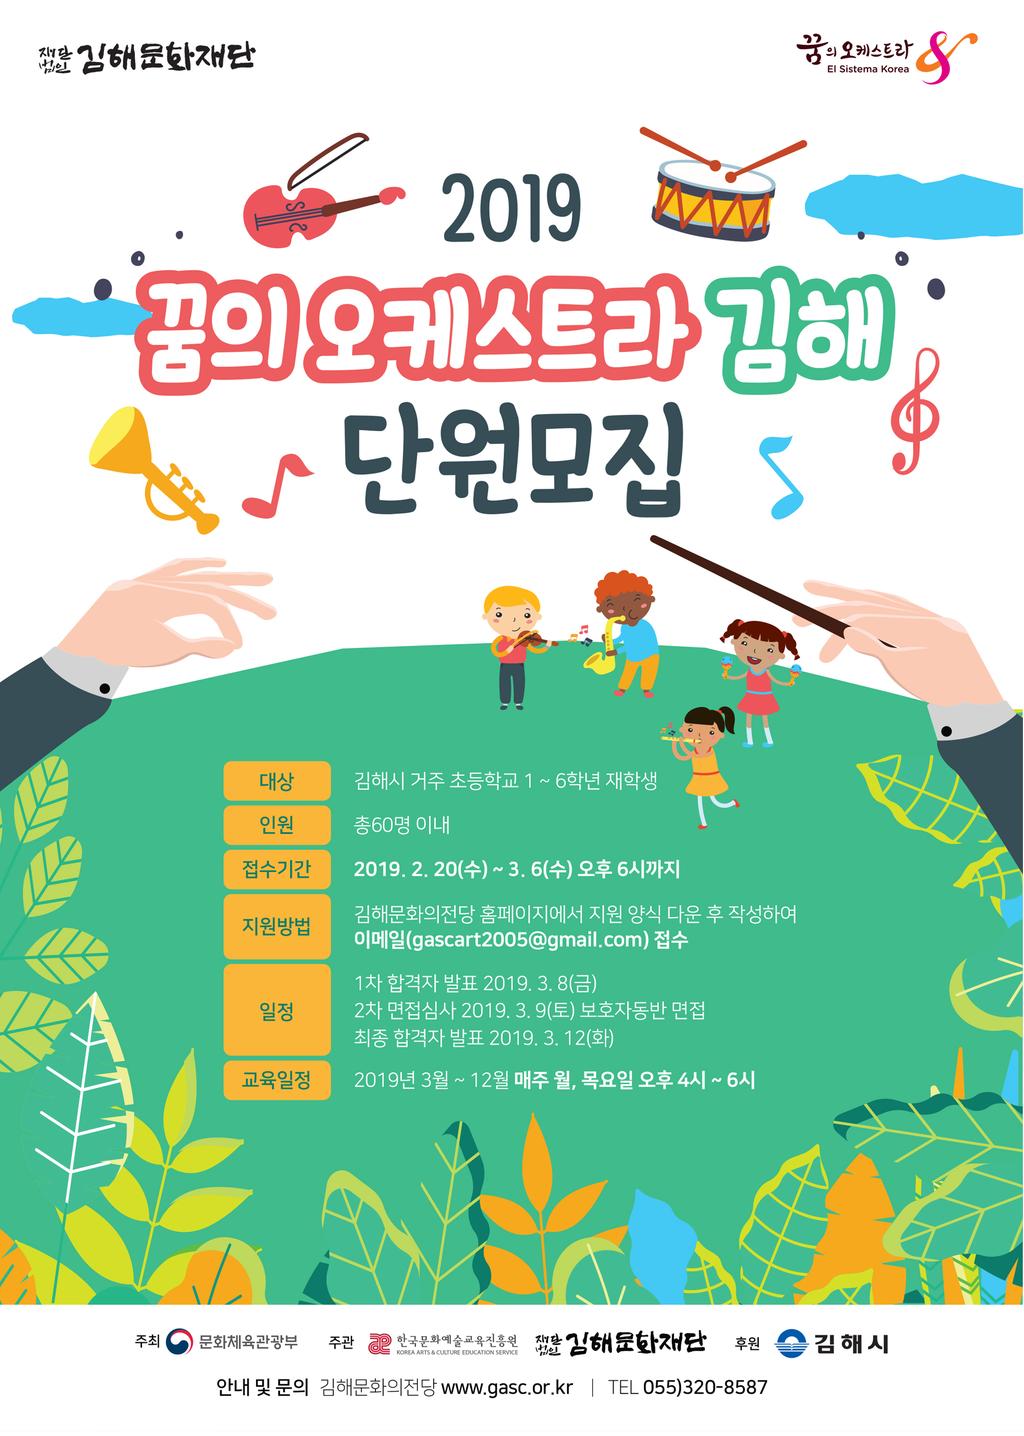 꿈의 오케스트라 모집 홍보 포스터